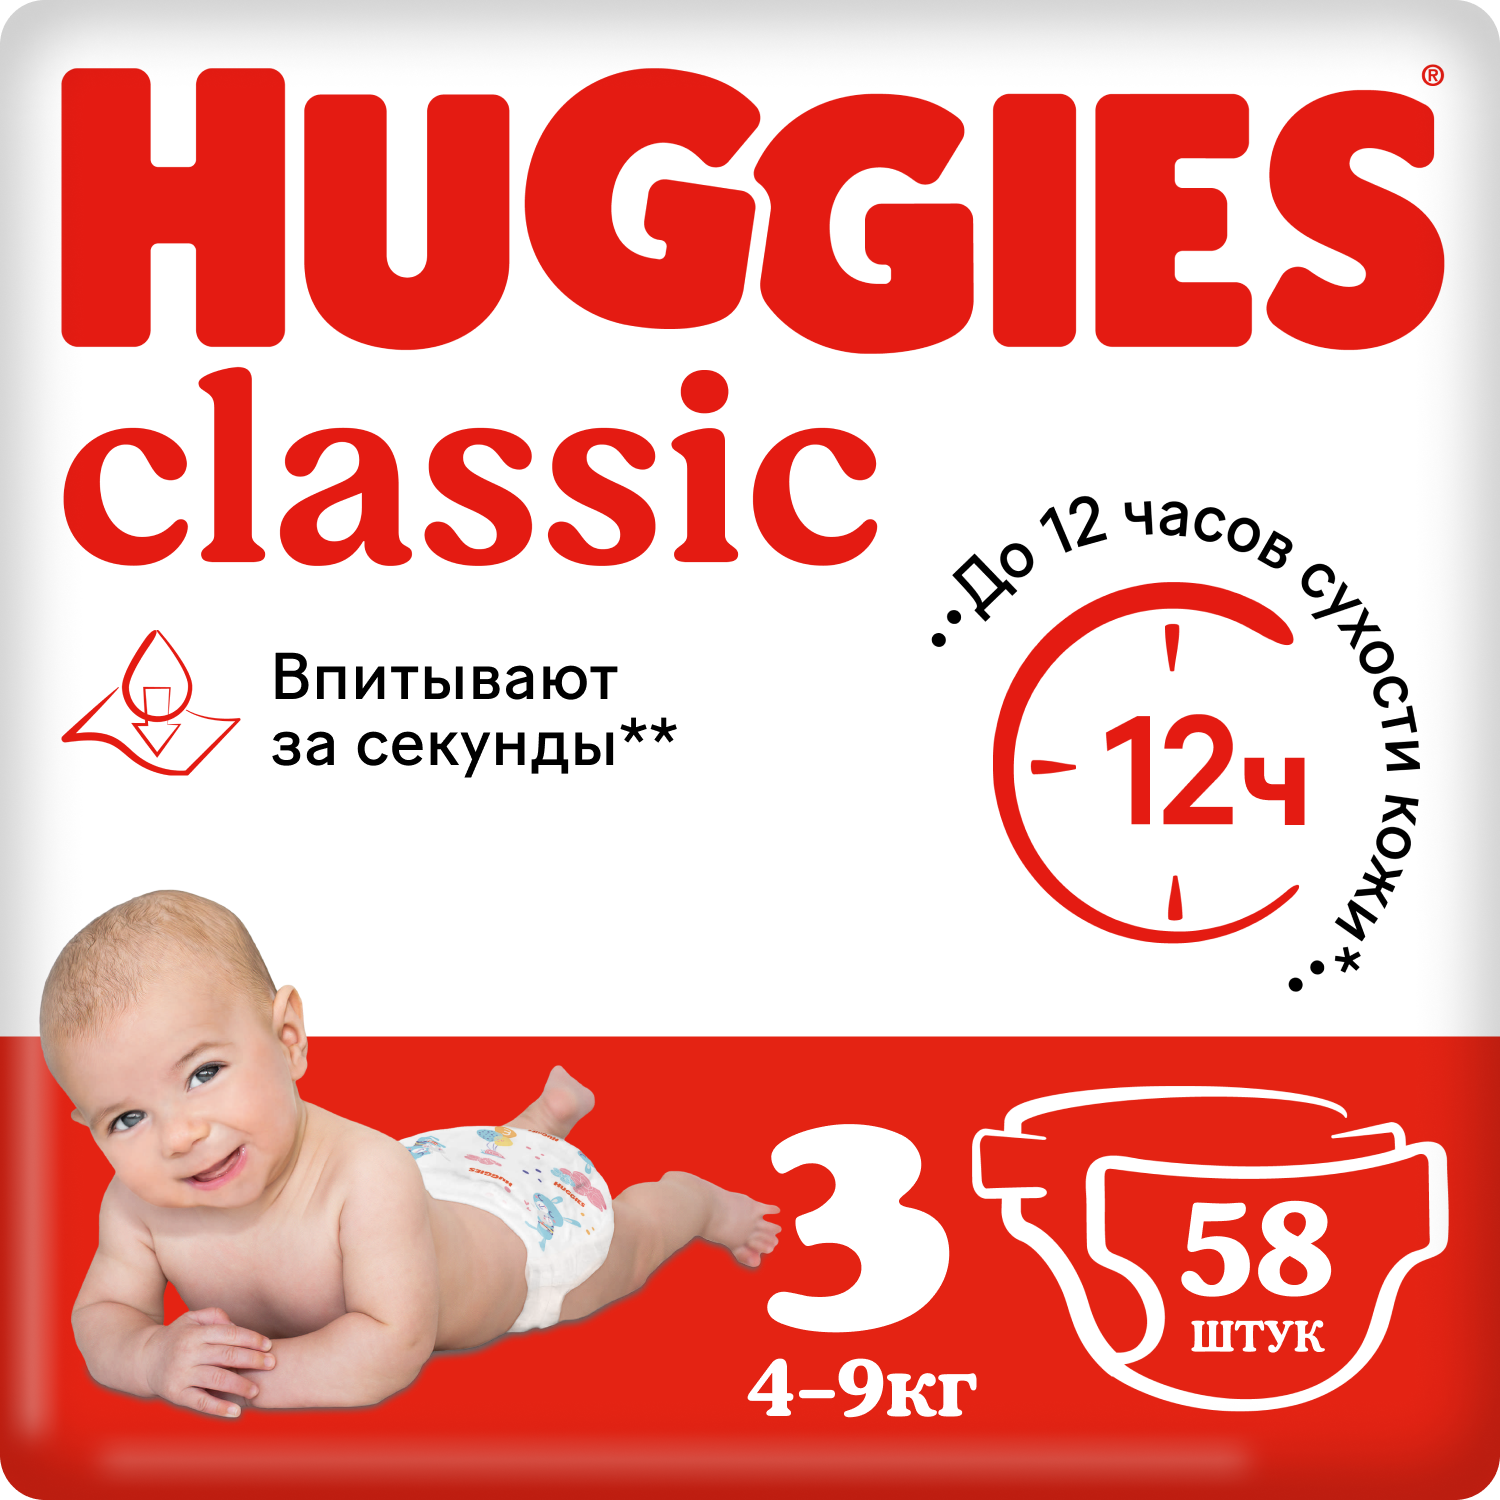 Подгузники Huggies Classic 3 (4-9 кг), 58 шт. подгузники huggies classic 4 7 18 кг 13 шт